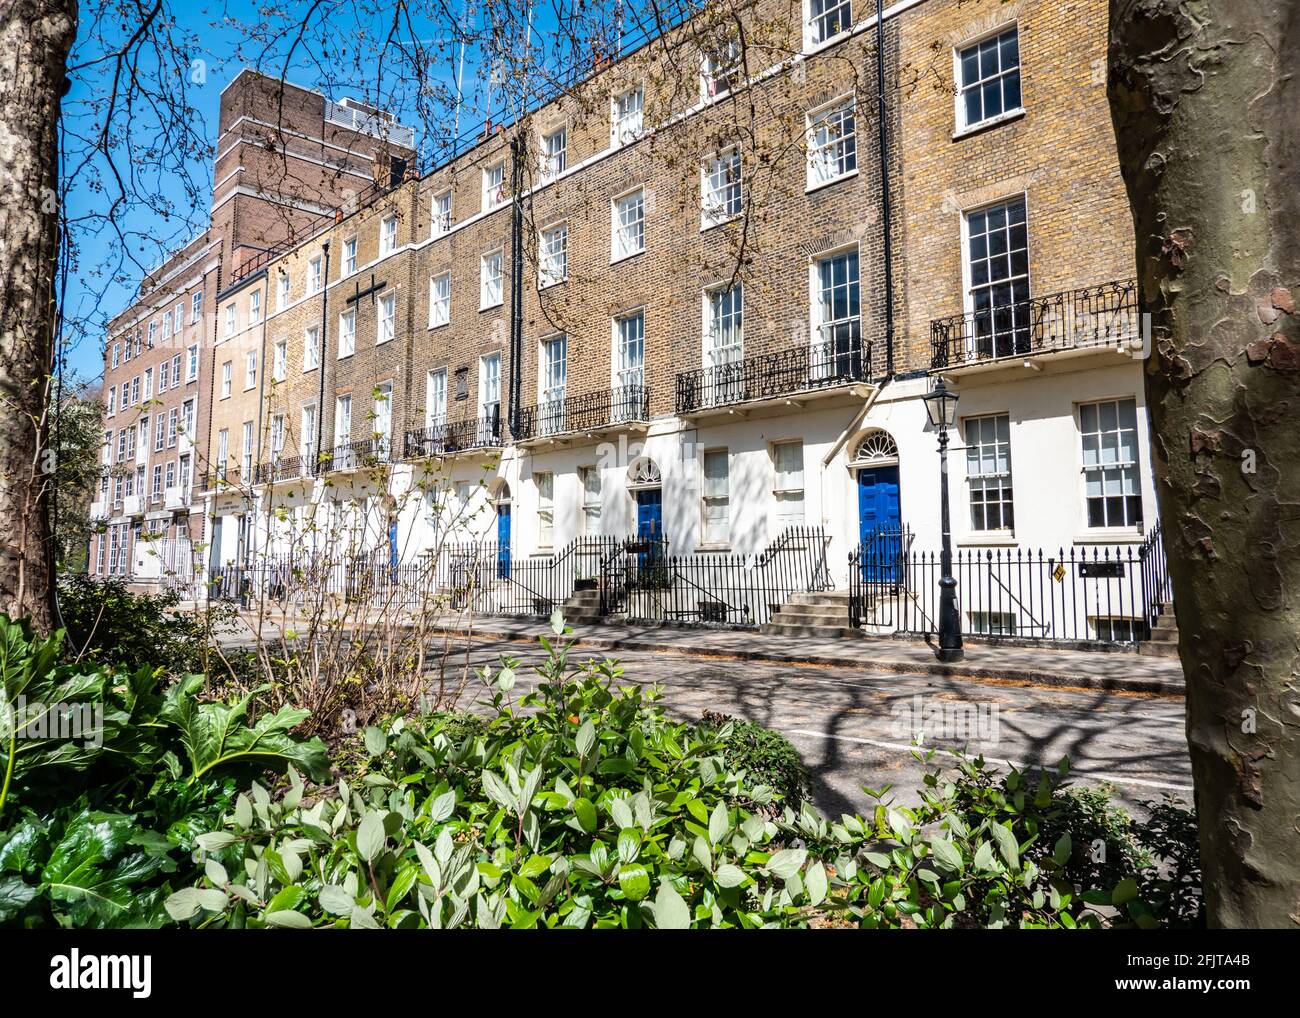 Georgianische Reihenhäuser, London. Ein heller Blick auf eine Reihe typischer Londoner Stadthäuser in einer ruhigen Straße ohne Verkehr oder geparkte Autos. Stockfoto